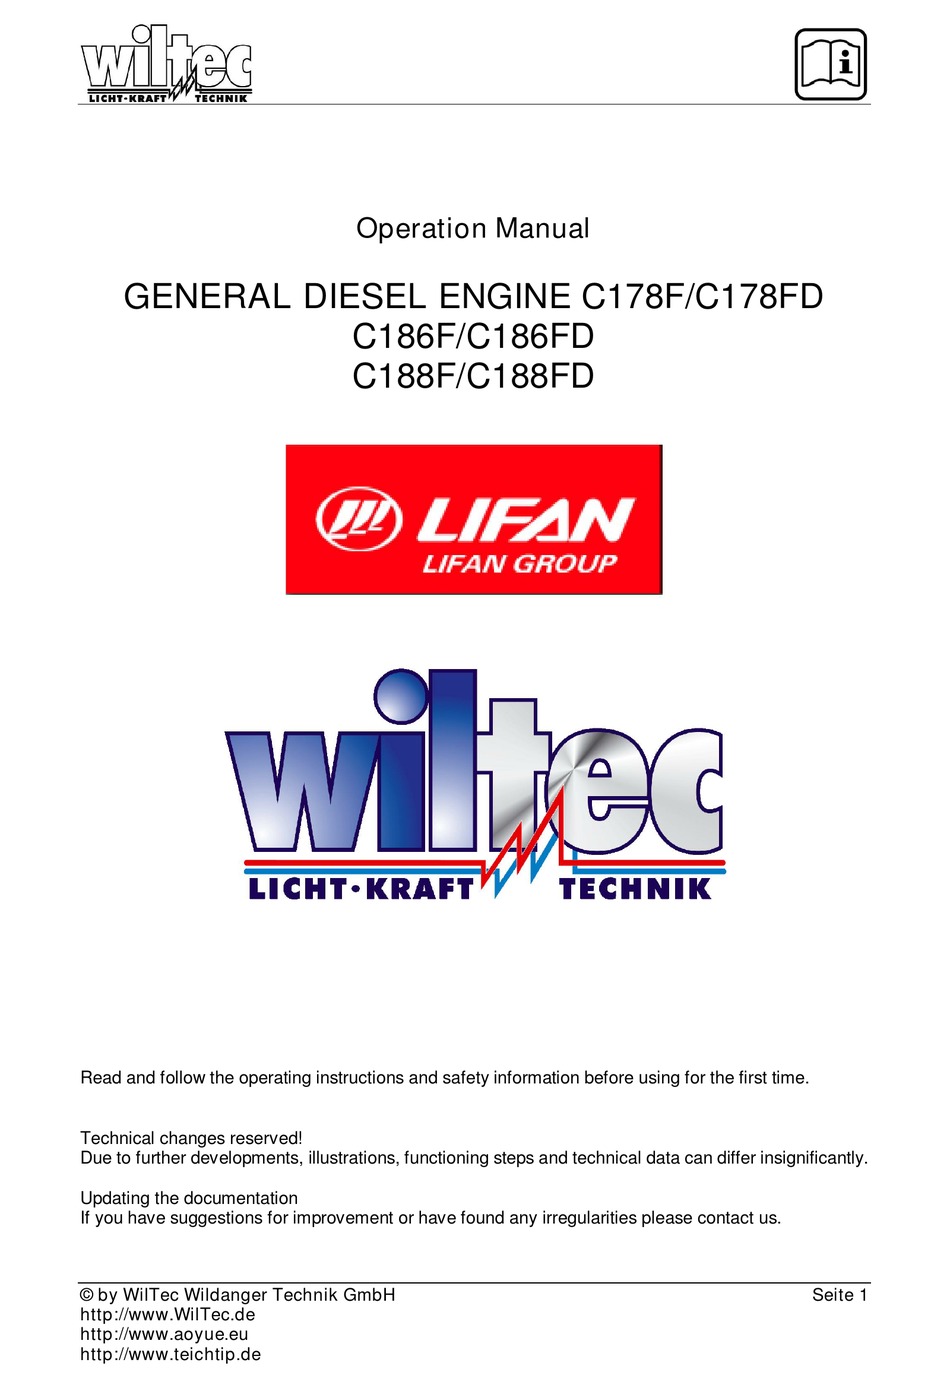 WilTec Wildanger Technik GmbH